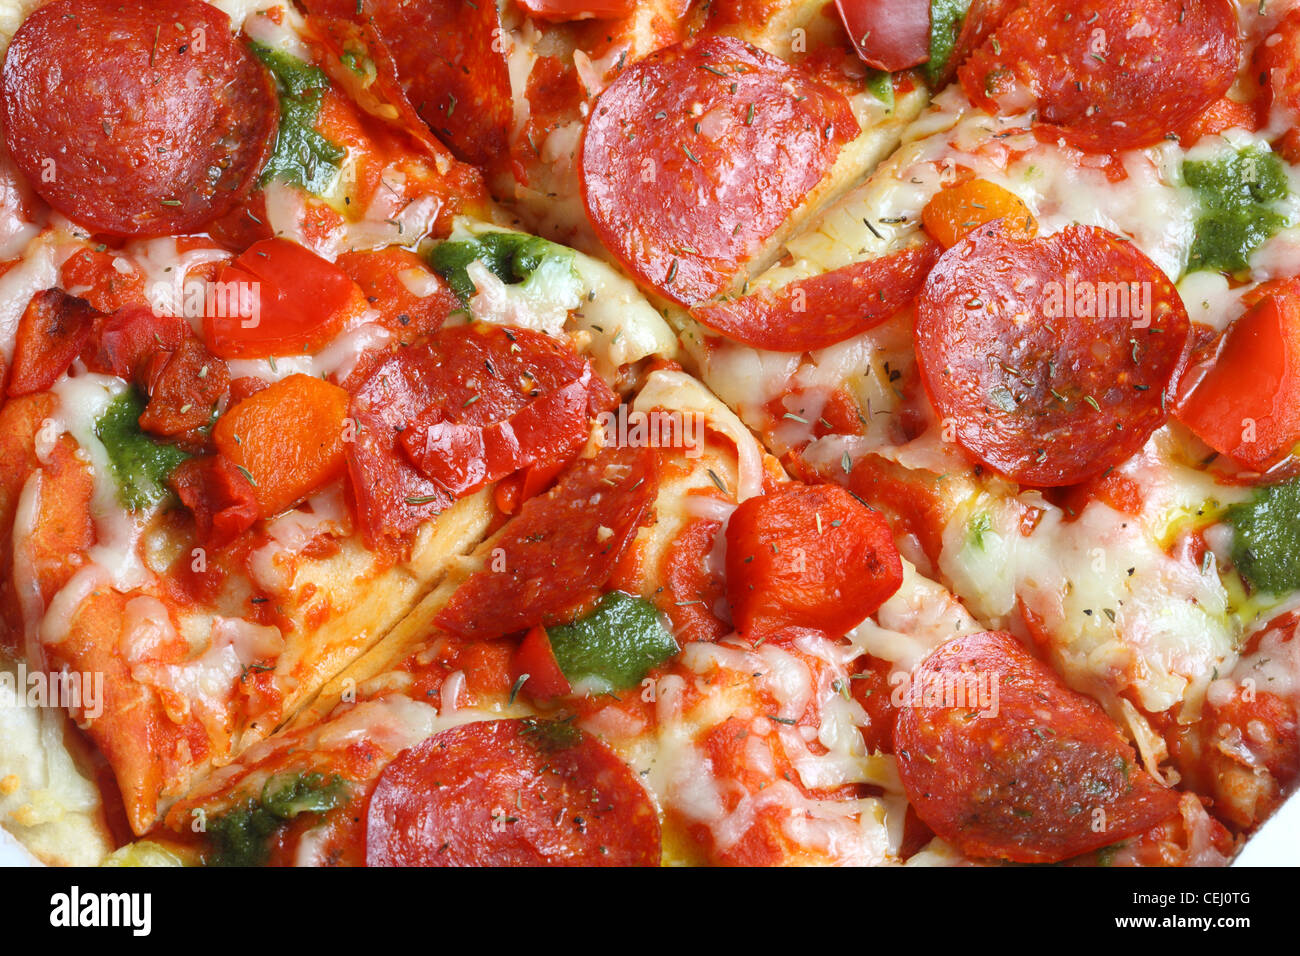 Ernährung, Fast-Food. Pizza zum mitnehmen, in einem Karton, Pizza-Schachtel. Stockfoto